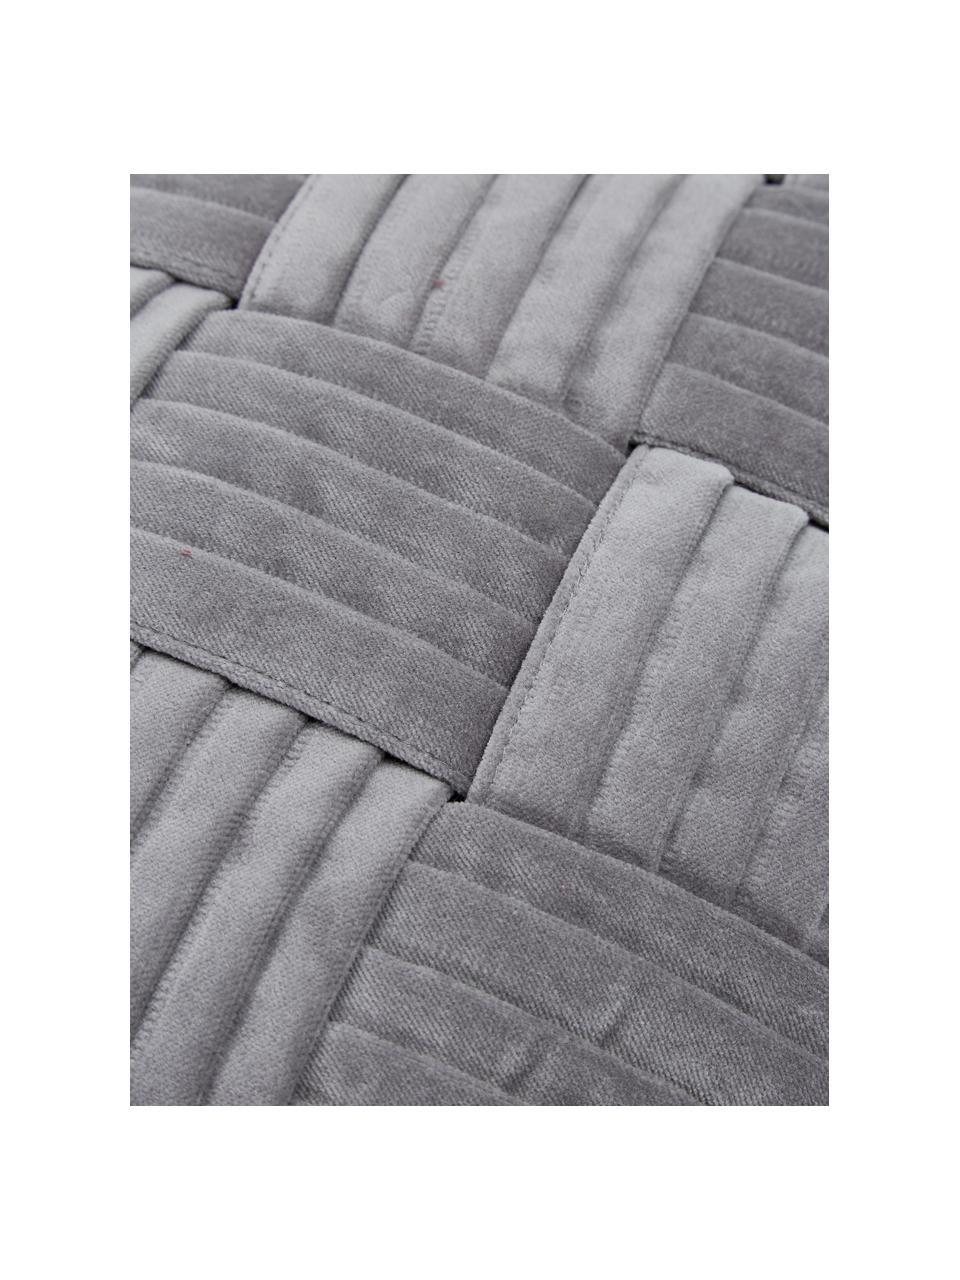 Fluwelen kussenhoes Sina in donkergrijs met structuurpatroon, Fluweel (100% katoen), Grijs, B 45 x L 45 cm